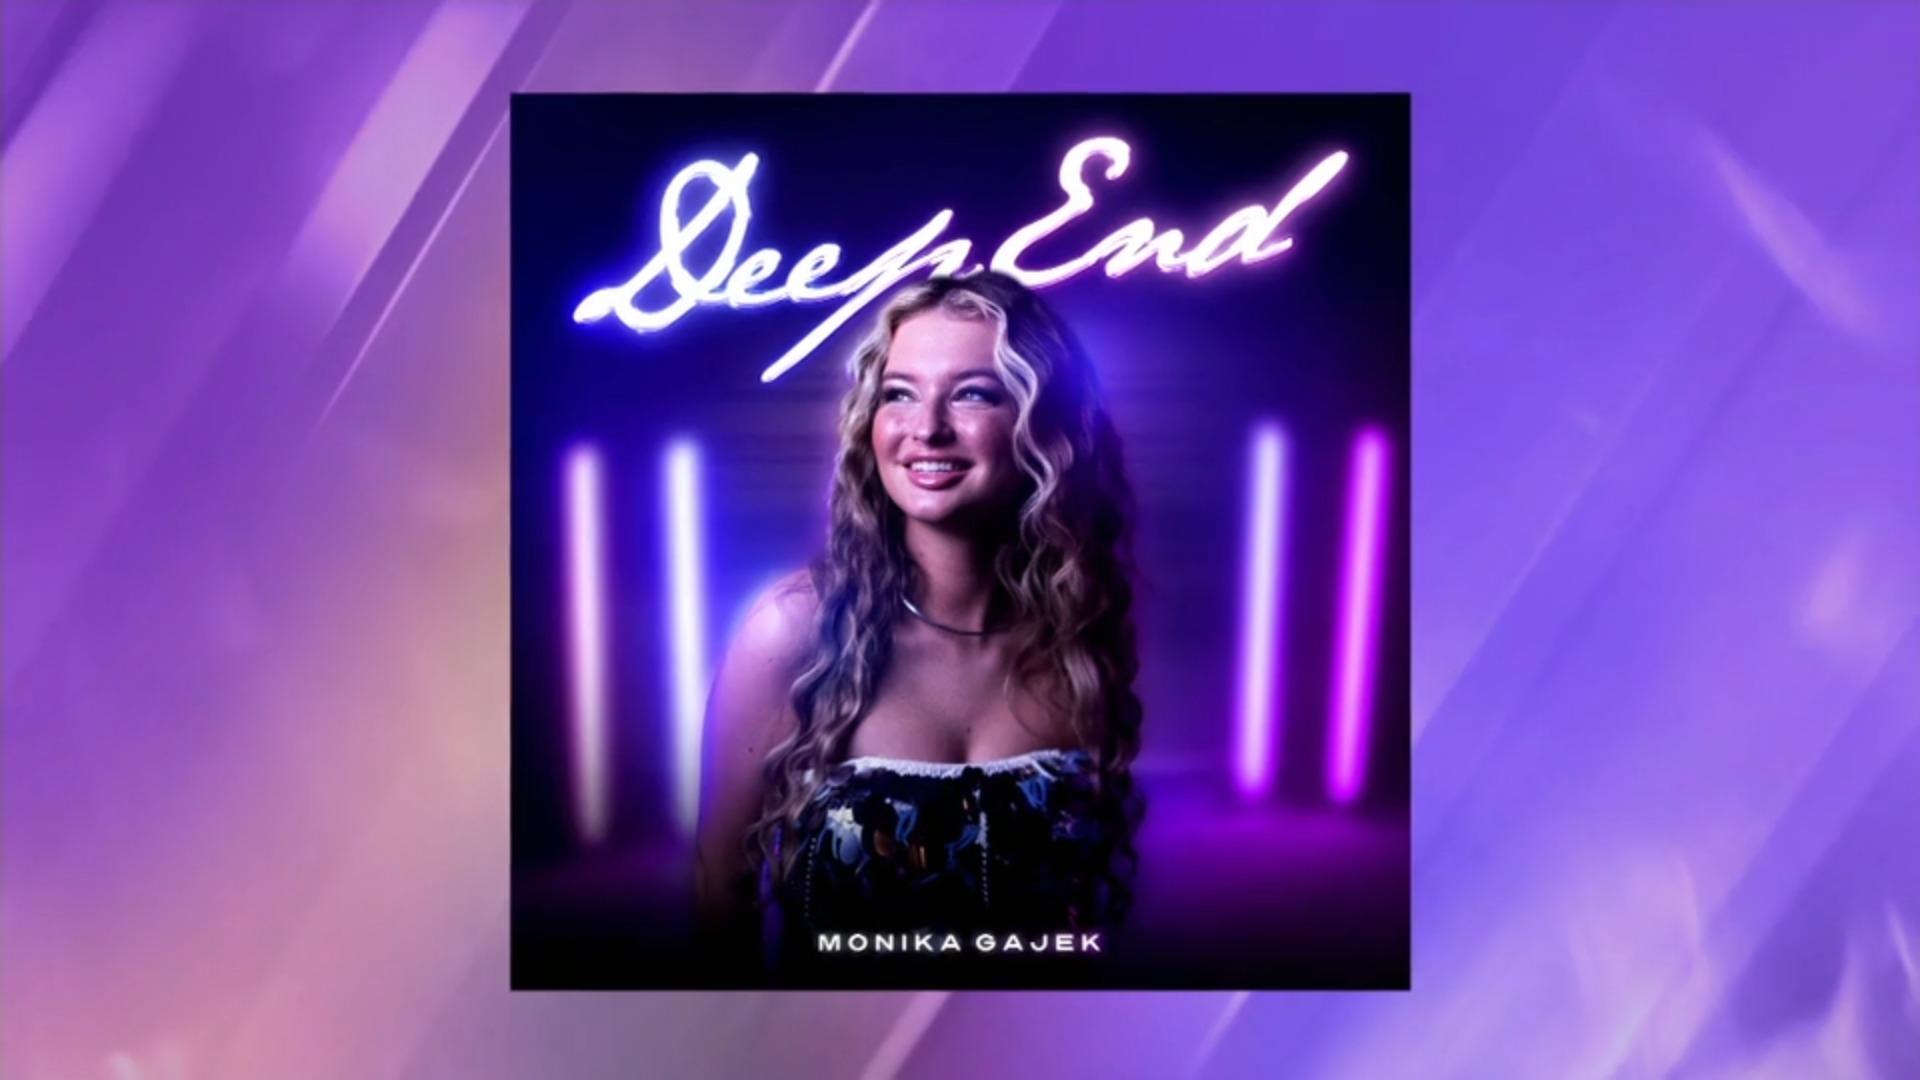 Das ist Monikas CD Cover für ihren eigenen Song "Deep End"